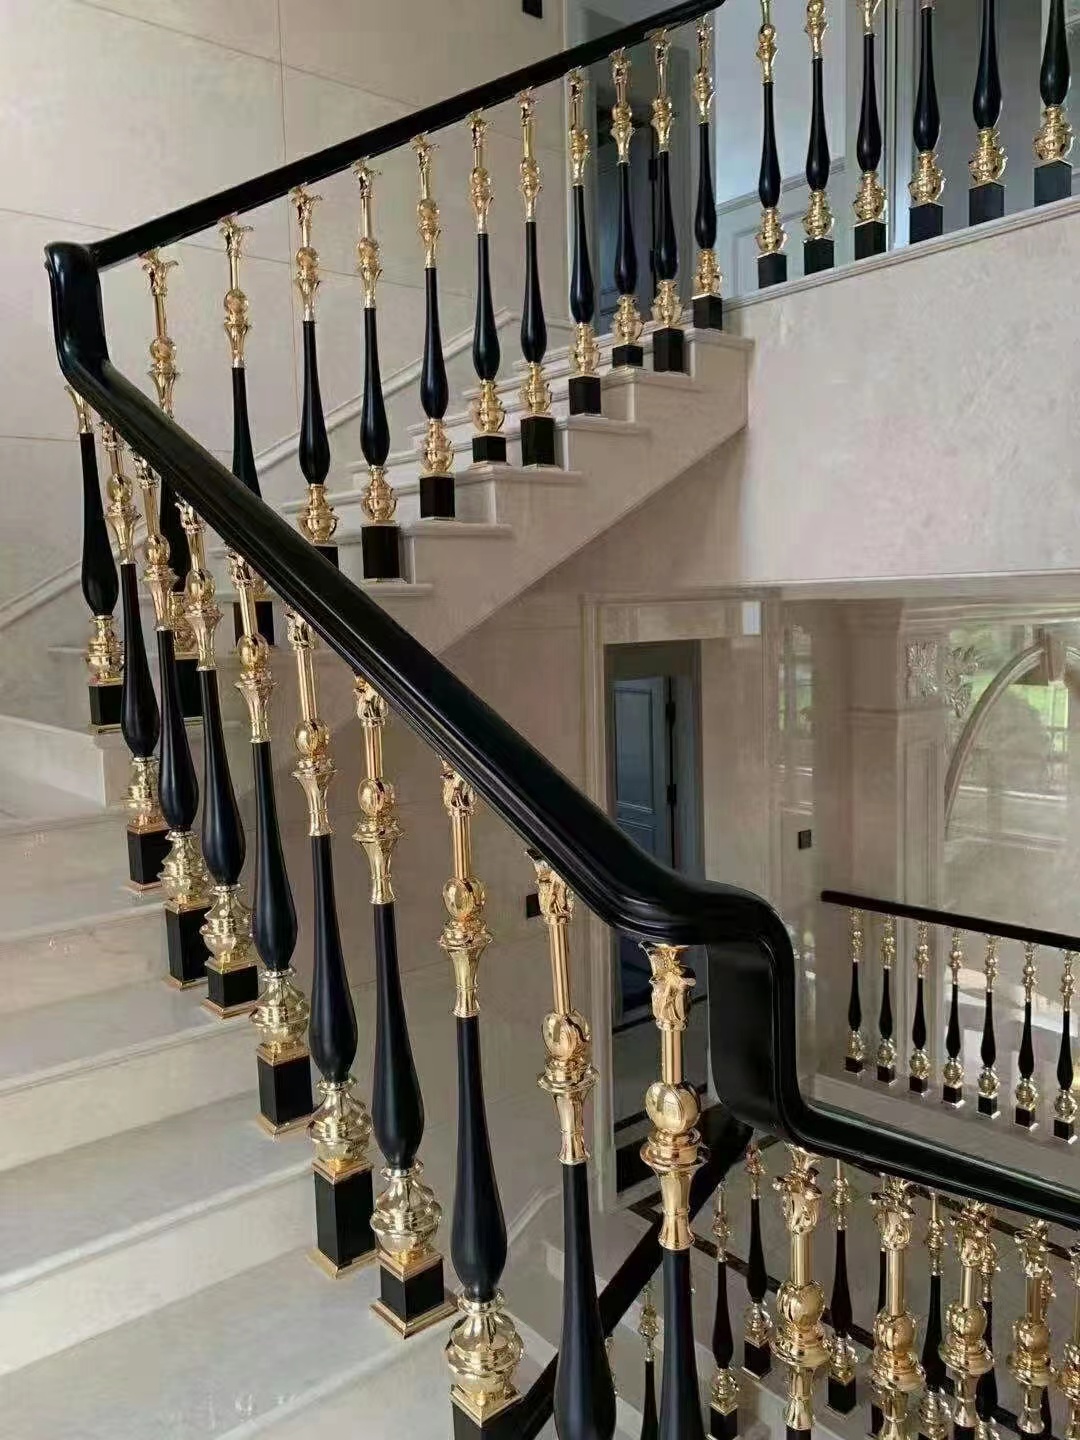 合 肥别墅铜楼梯扶手订制 溢升工厂艺术铝围栏装饰